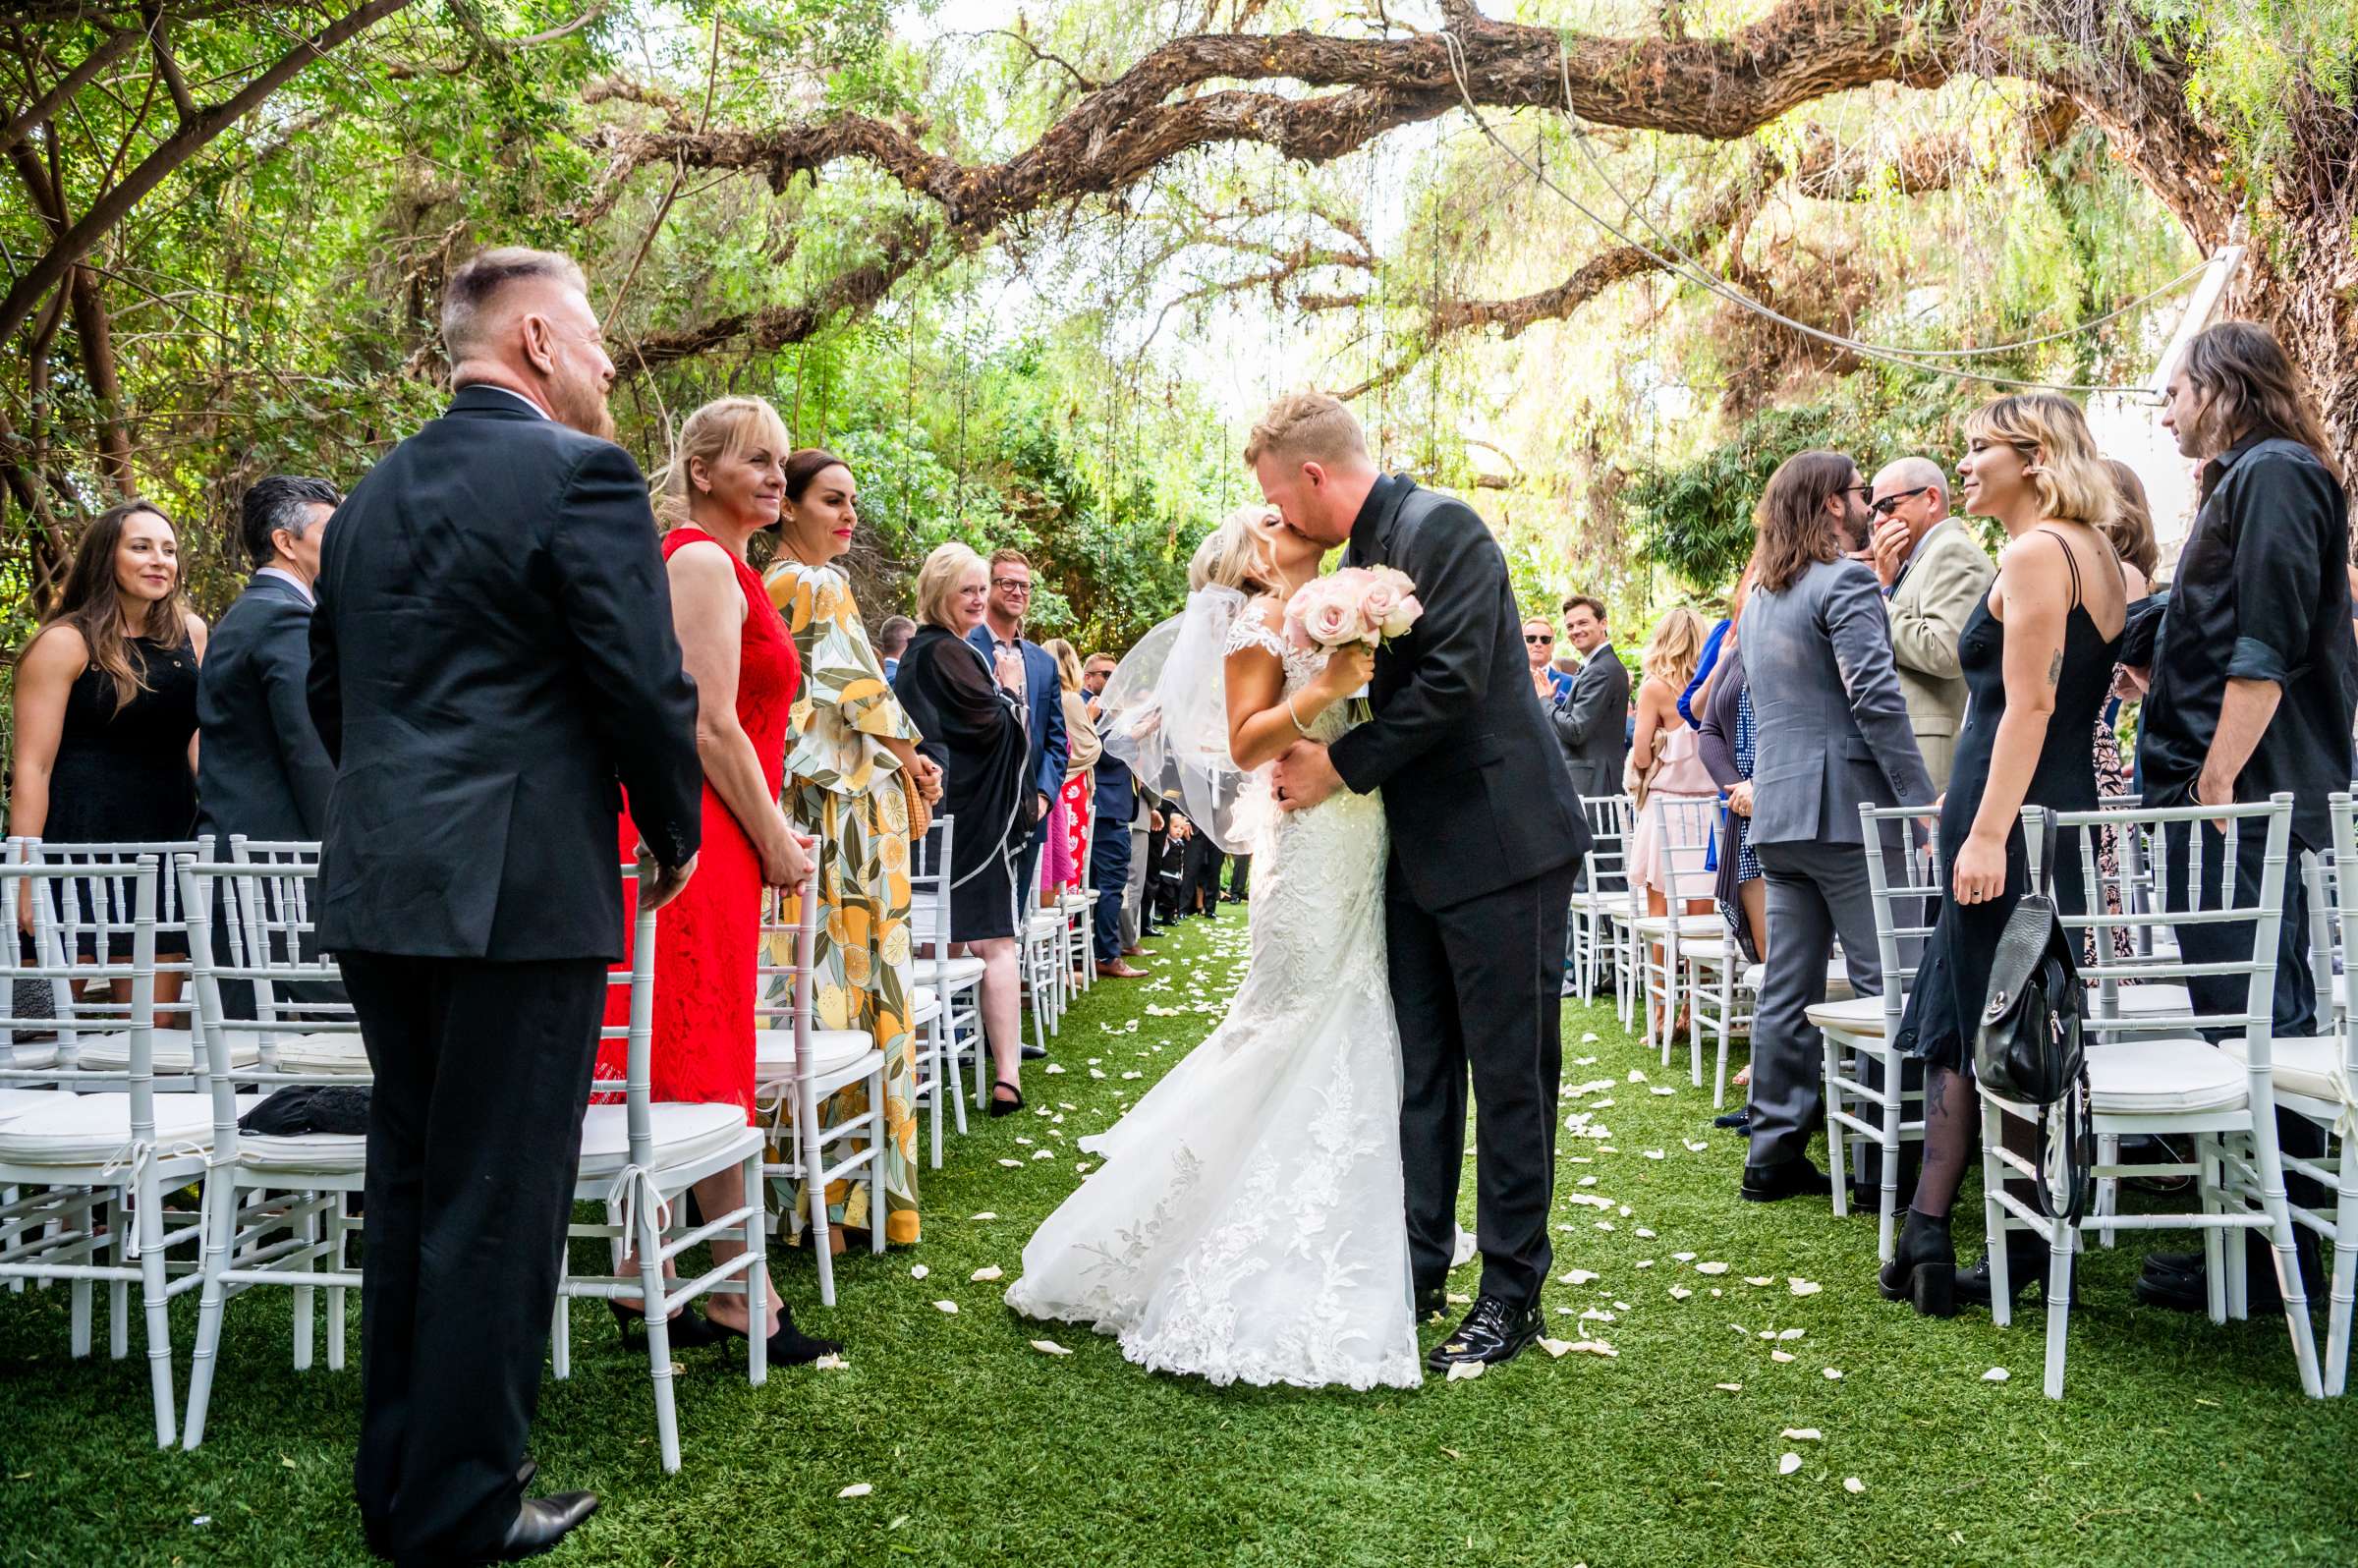 Green Gables Wedding Estate Wedding, Tiffanie and Daniel Wedding Photo #16 by True Photography